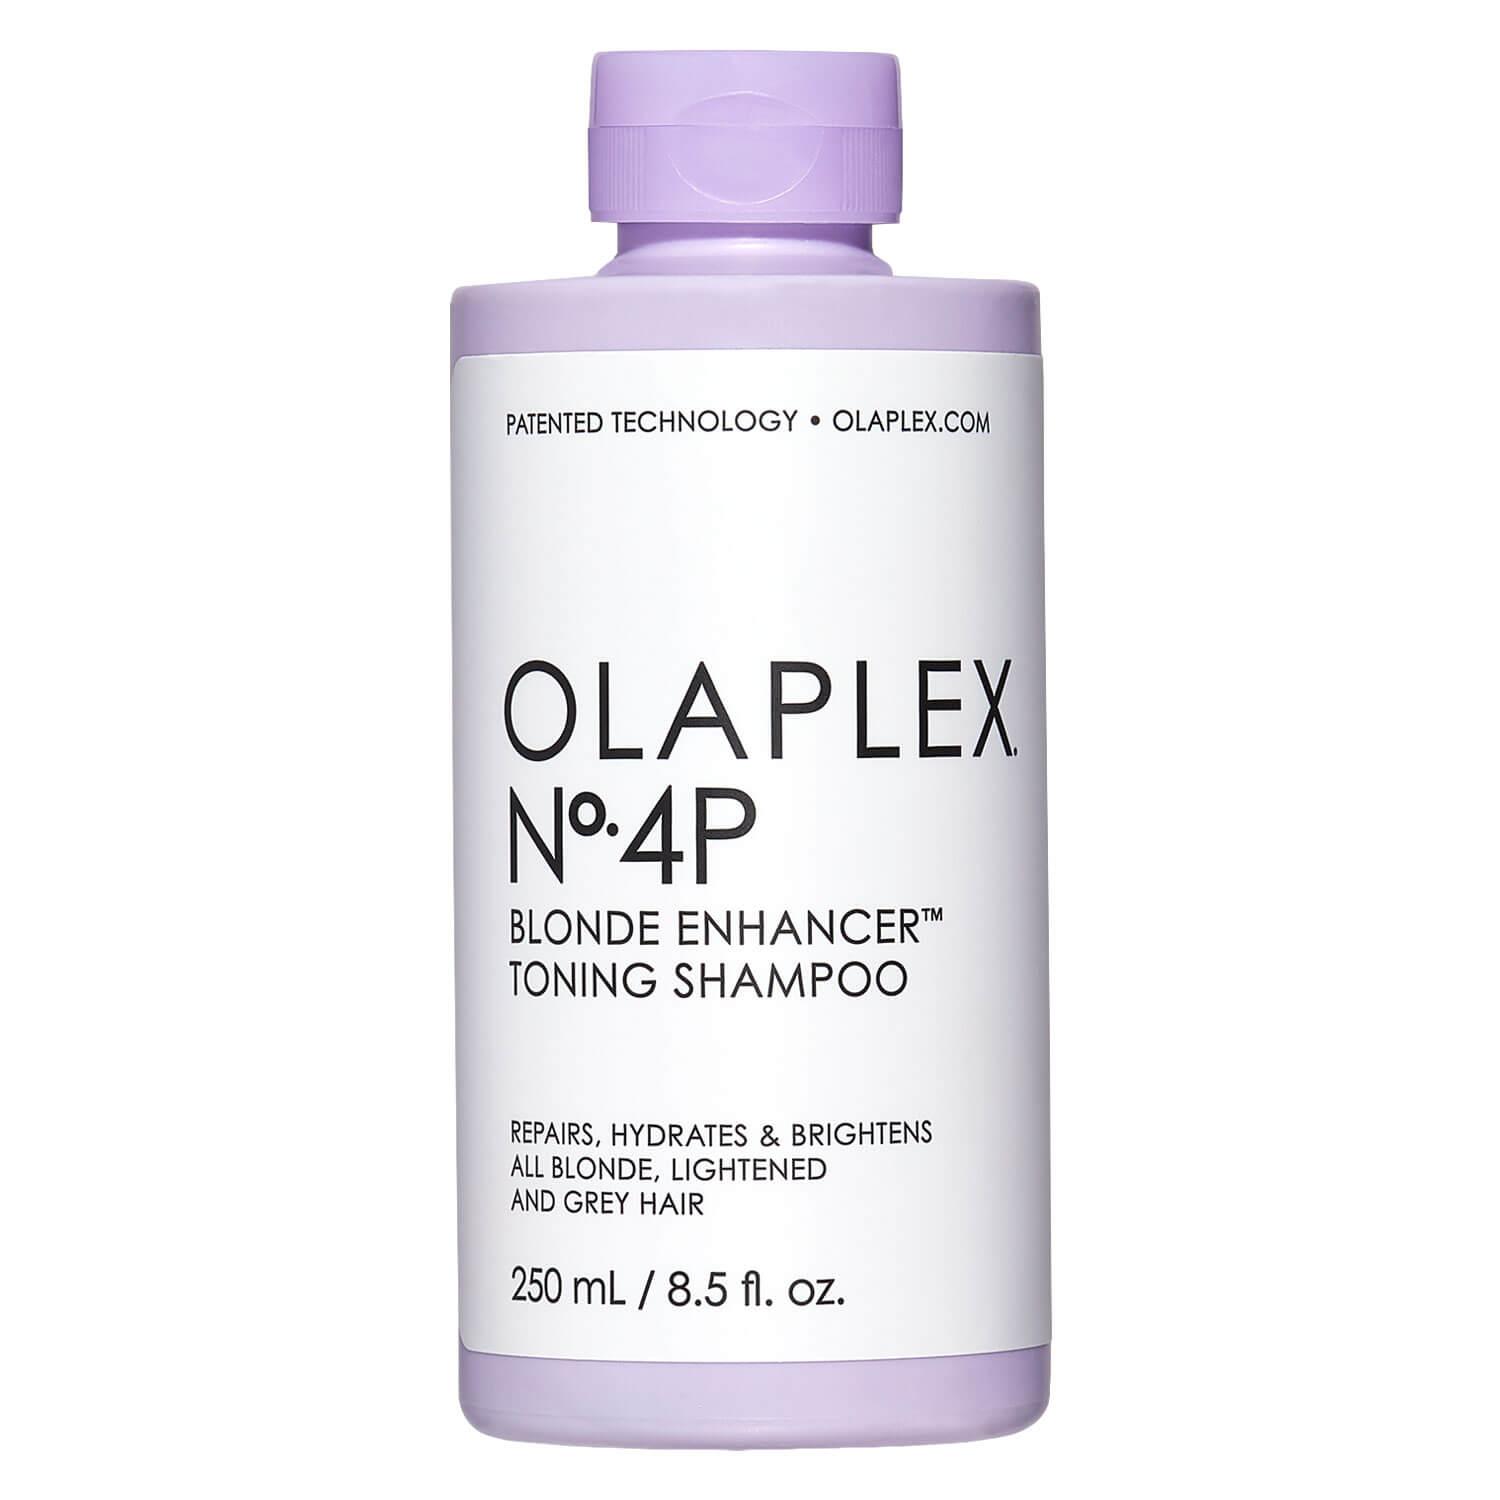 Olaplex - Blonde Enhancer Toning Shampoo No. 4P